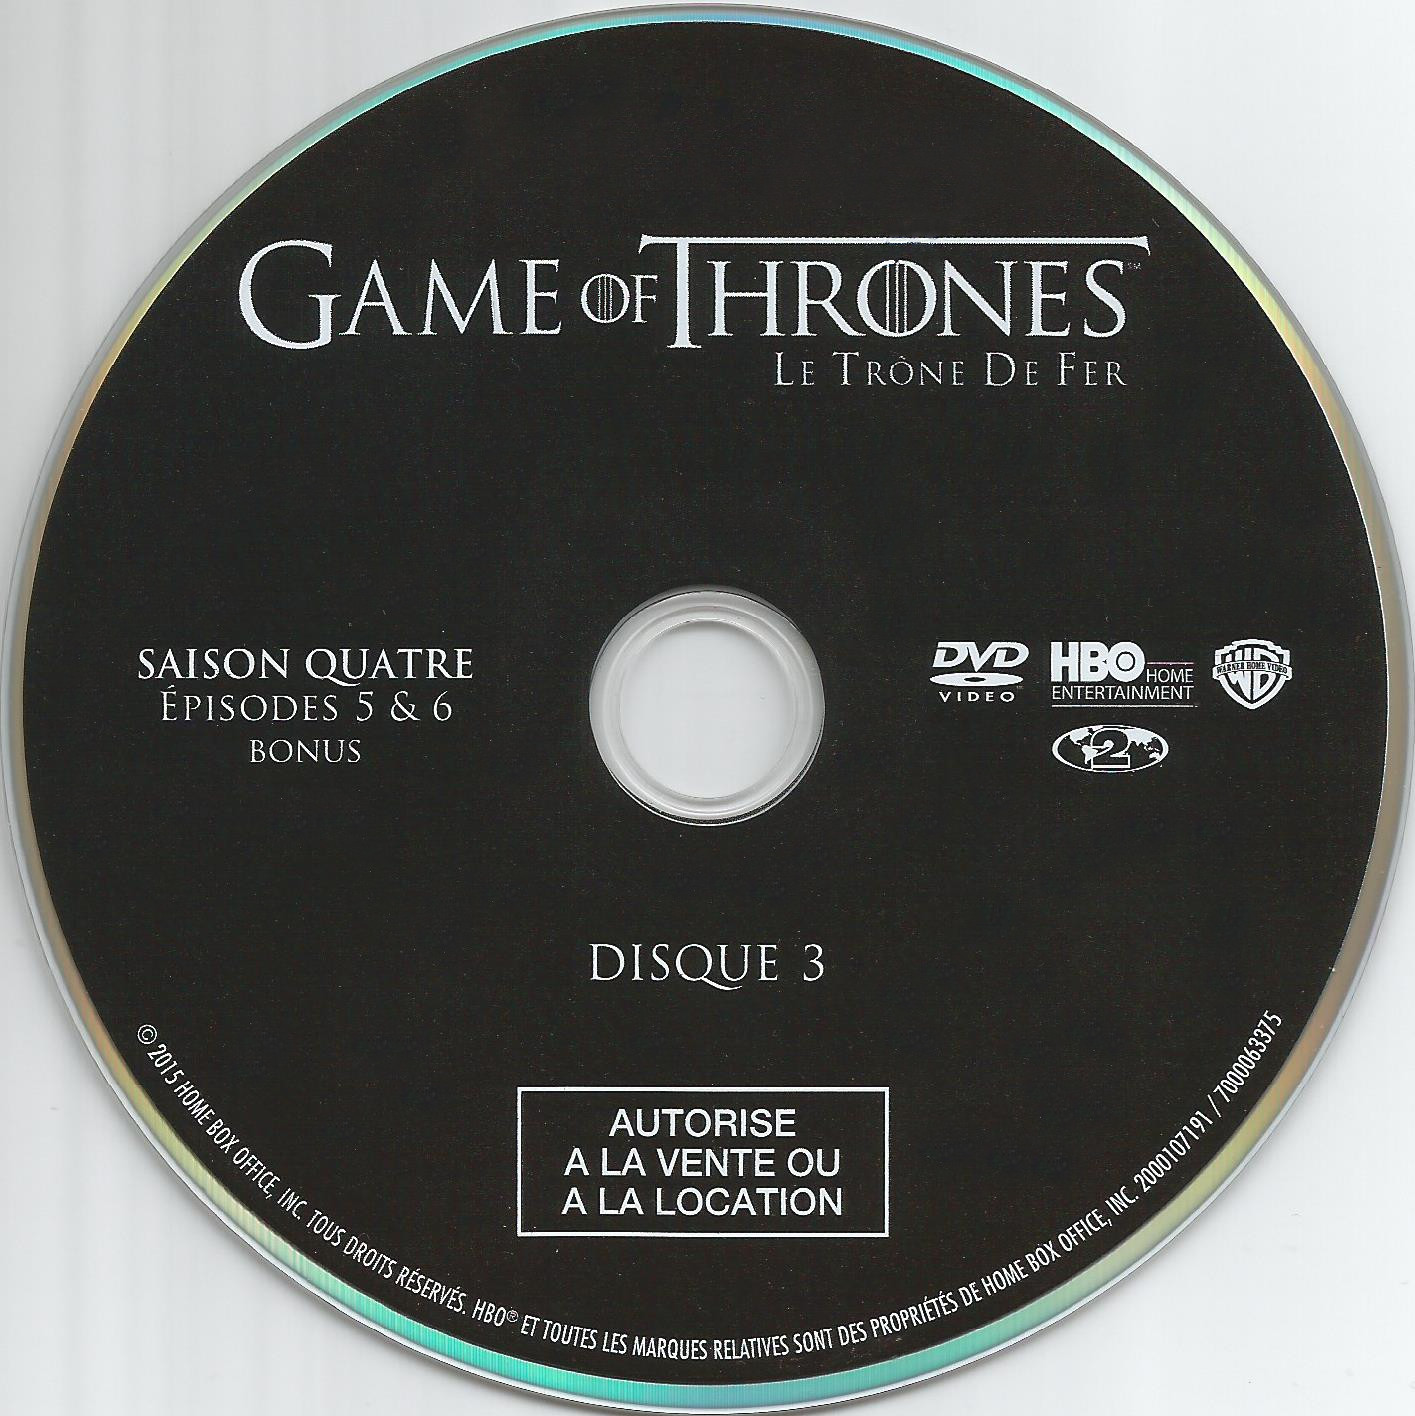 Game of thrones (le trone de fer) Saison 4 DVD 3